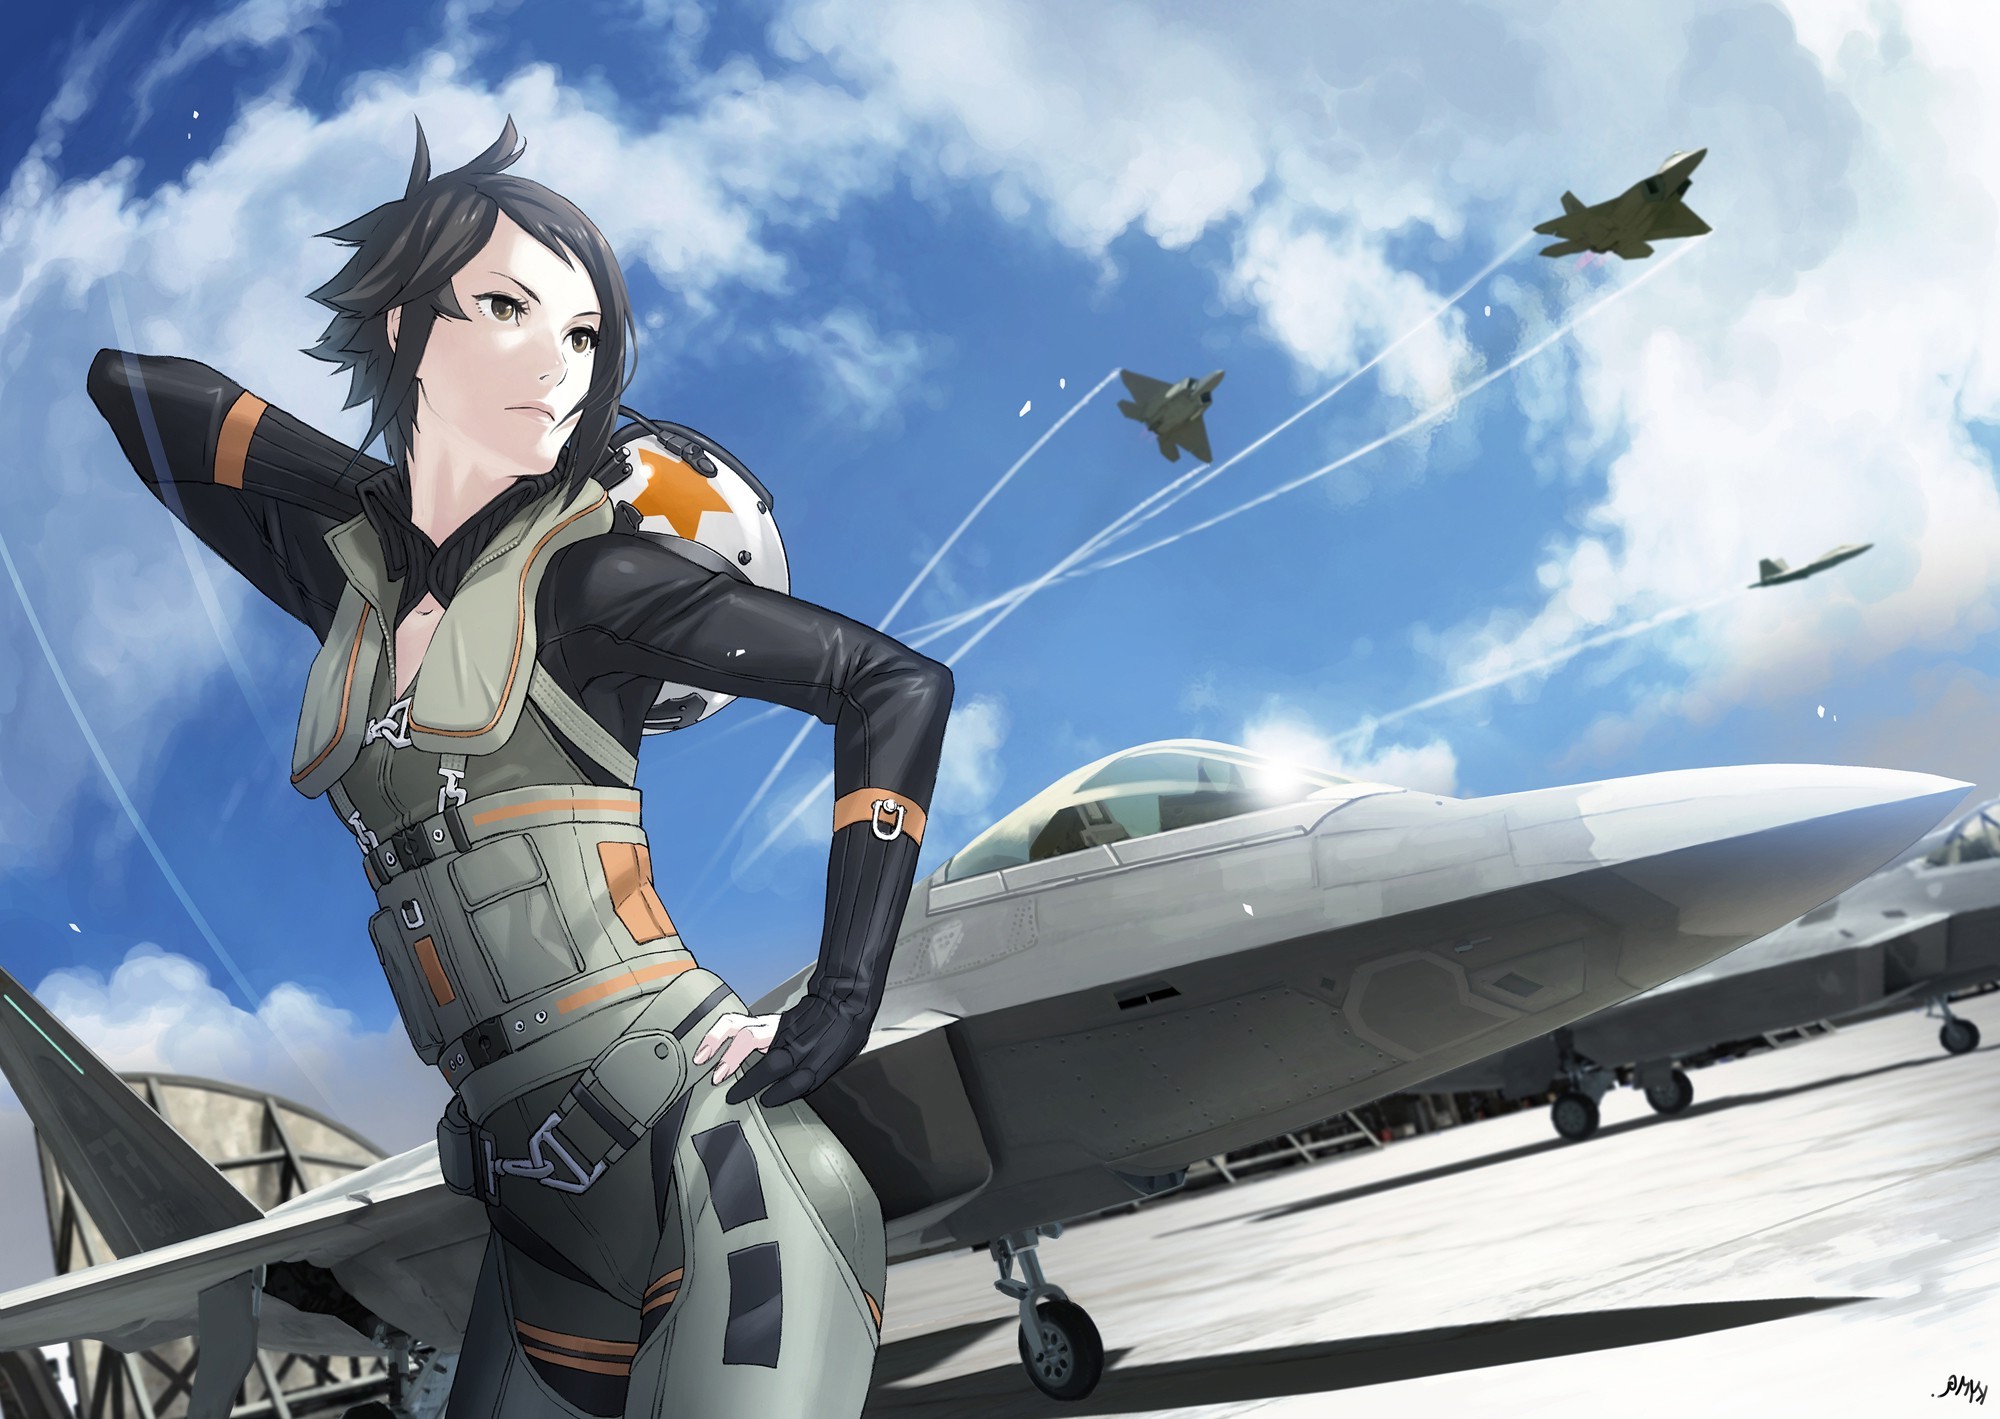 Anime Girl Fighter Jet